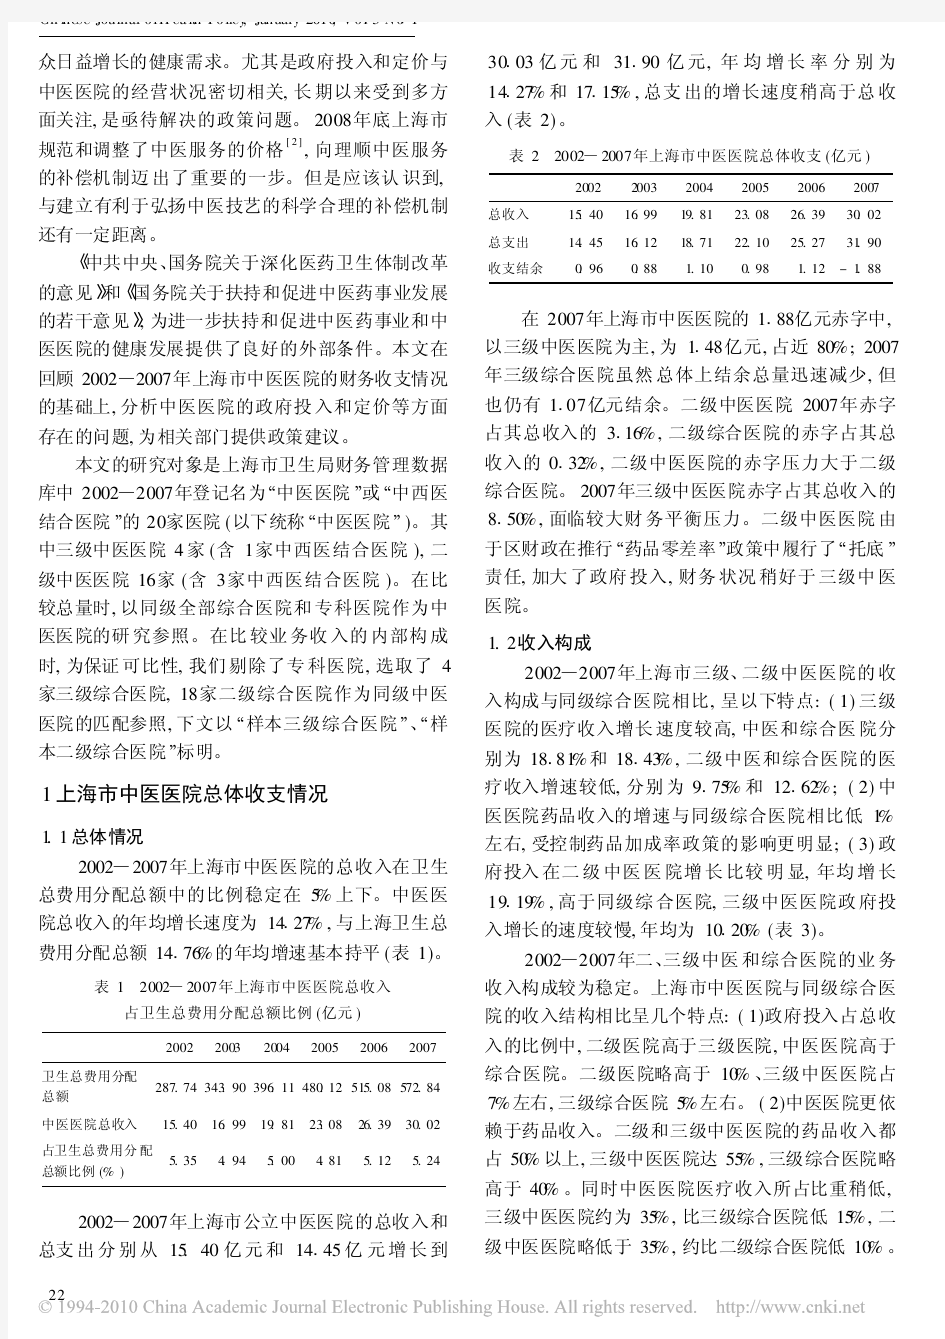 上海市中医医院收入与支出分析